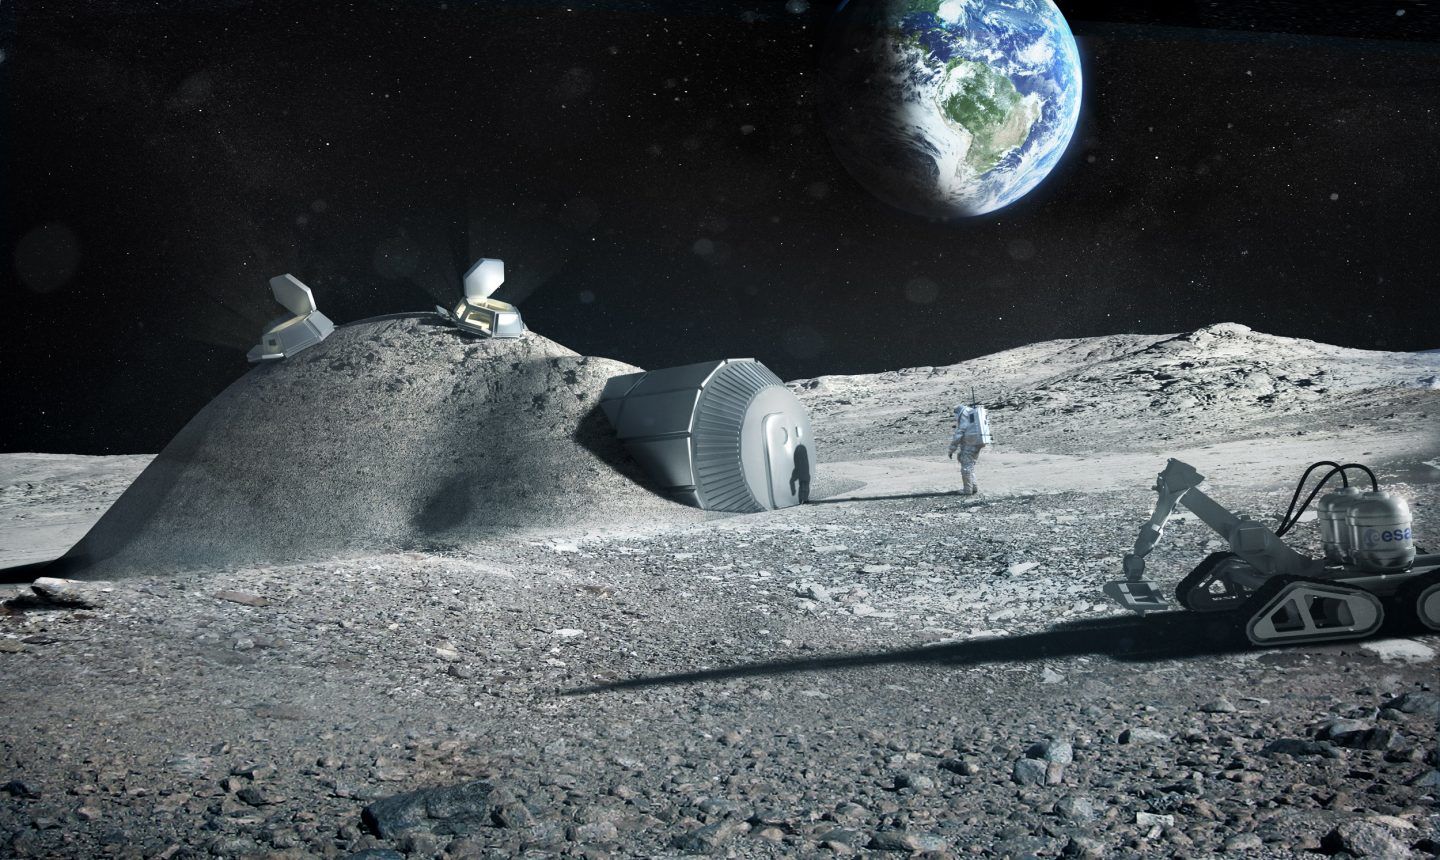 كيف يمكنك البناء على القمر؟ ابدأ بالتربة القمرية